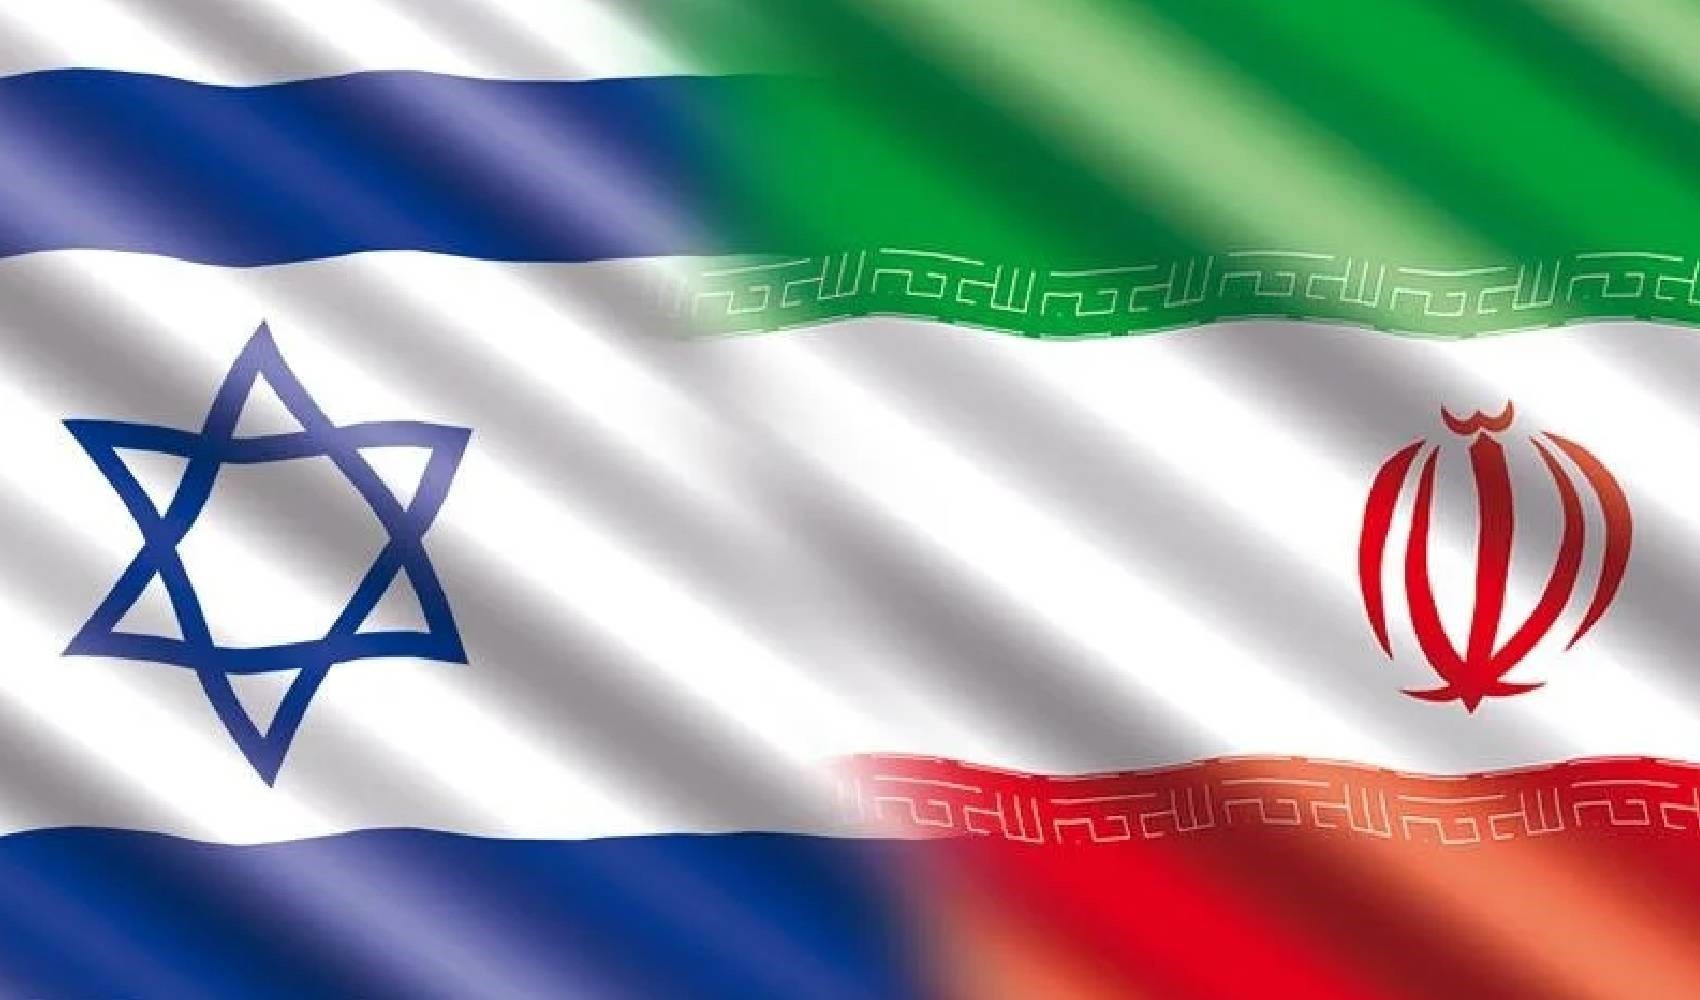 İran’ın 'cezalandıracağız' açıklamasına İsrail’den cevap: 'Herhangi bir saldırıya güçlü bir karşılık vereceğiz'